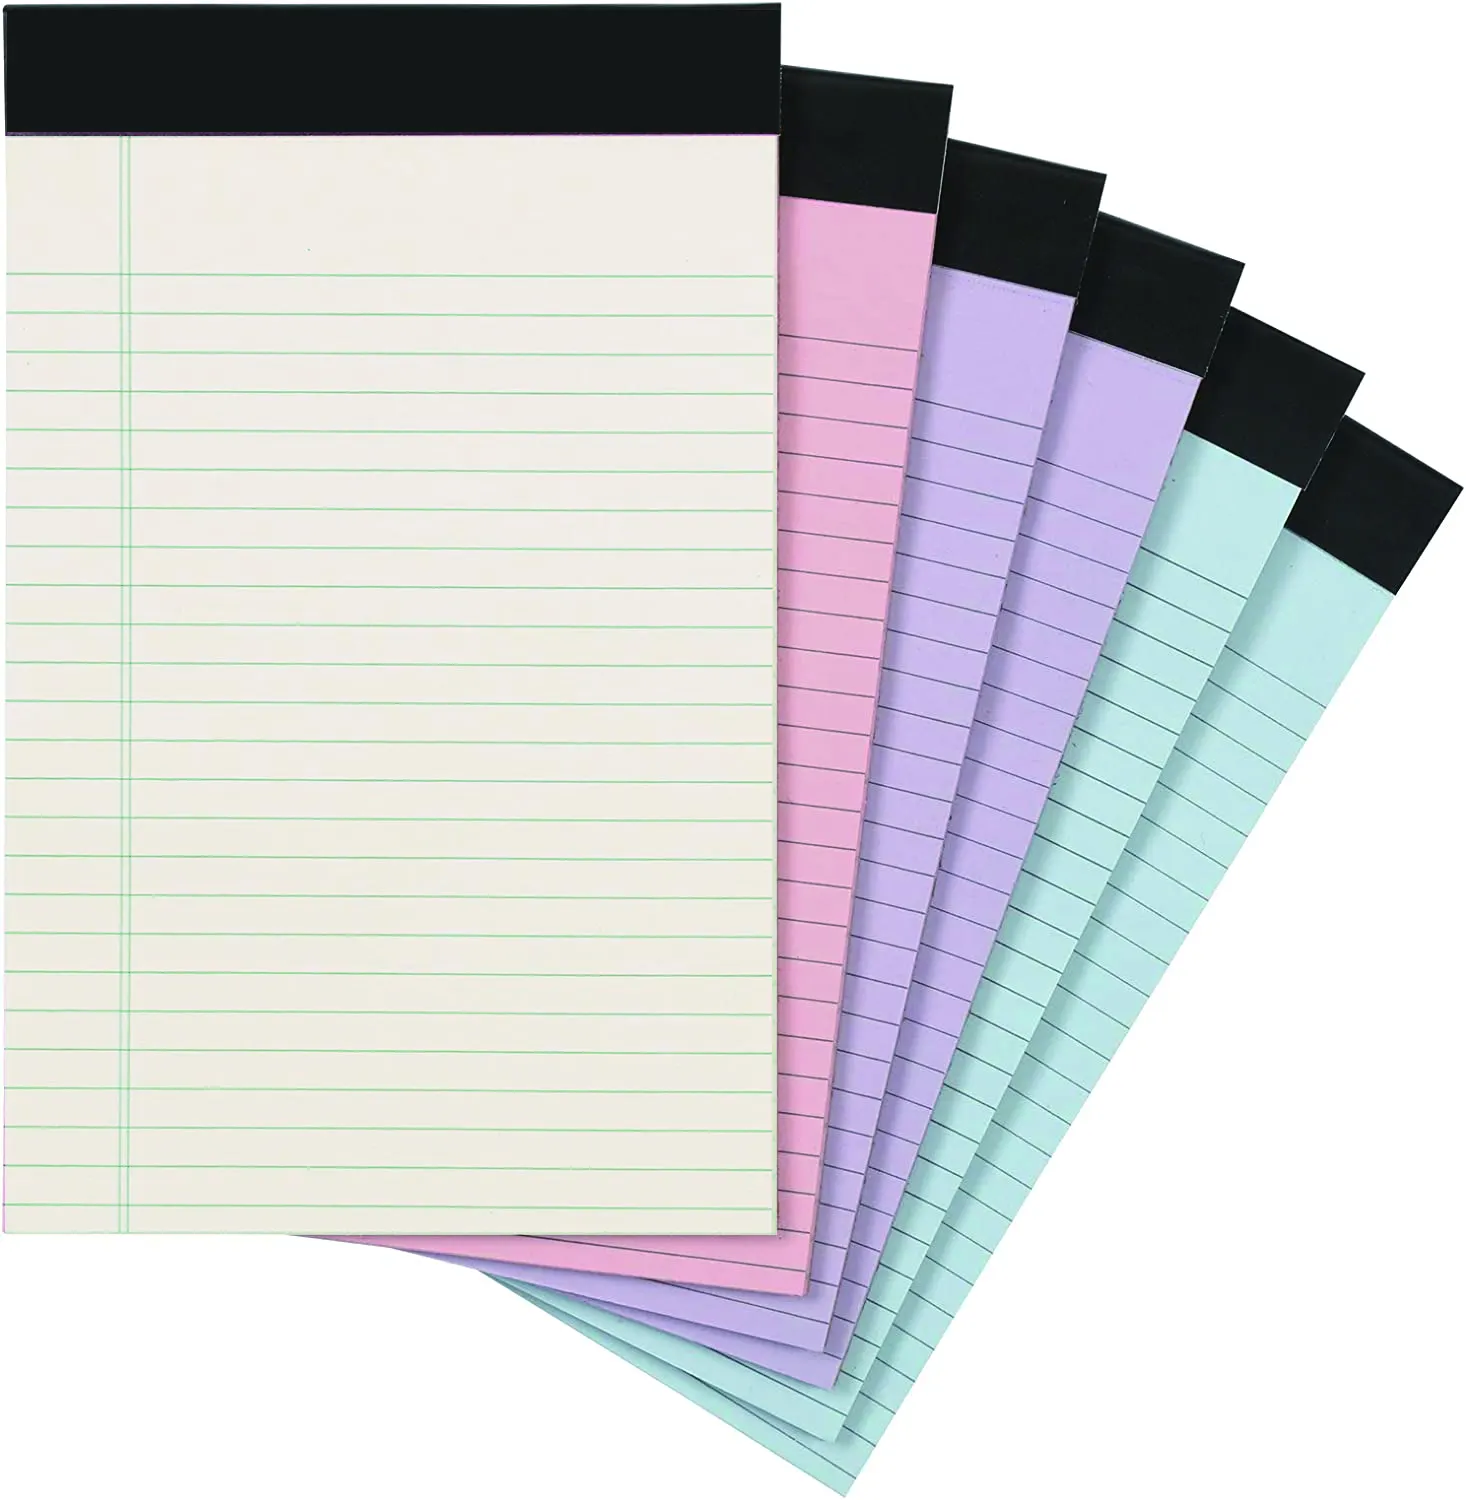 Blocs legales Blocs de escritura con regla ancha 50 hojas 8,5x11 5x8 "bloc de notas blocs de notas de escritura personalizados